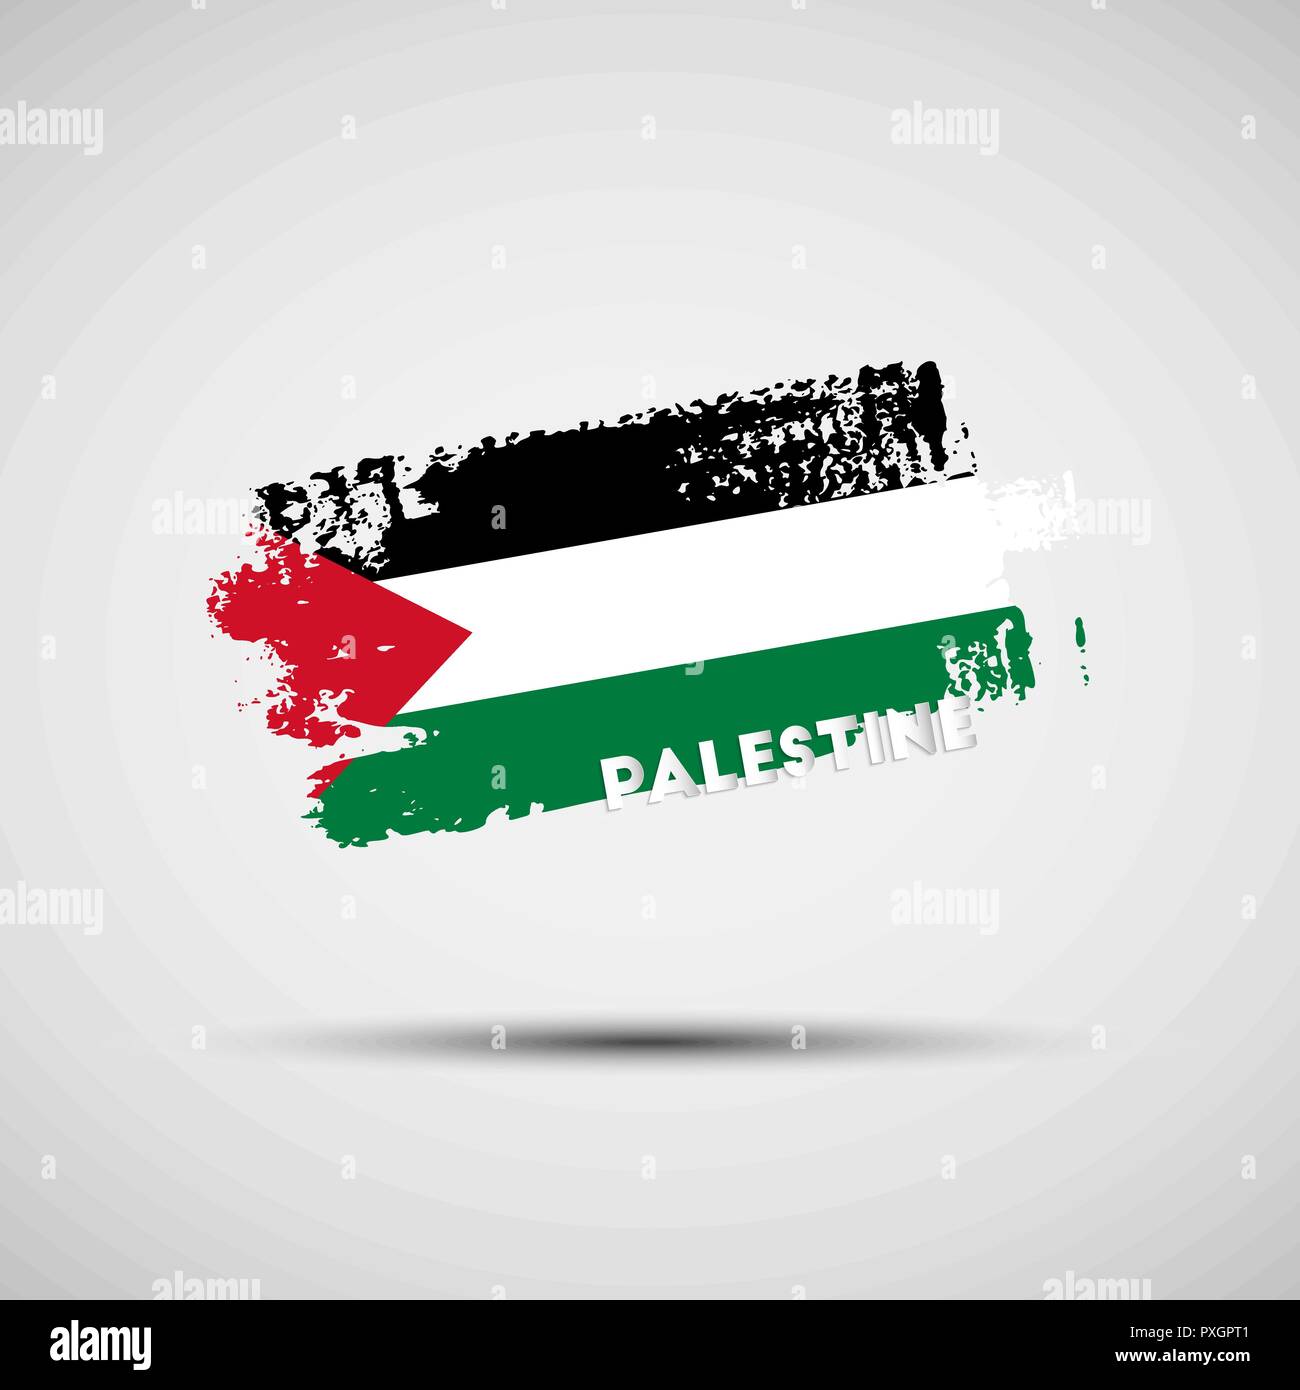 Bandera De Palestina. Trazos De Pincel Negro, Blanco Y Verde